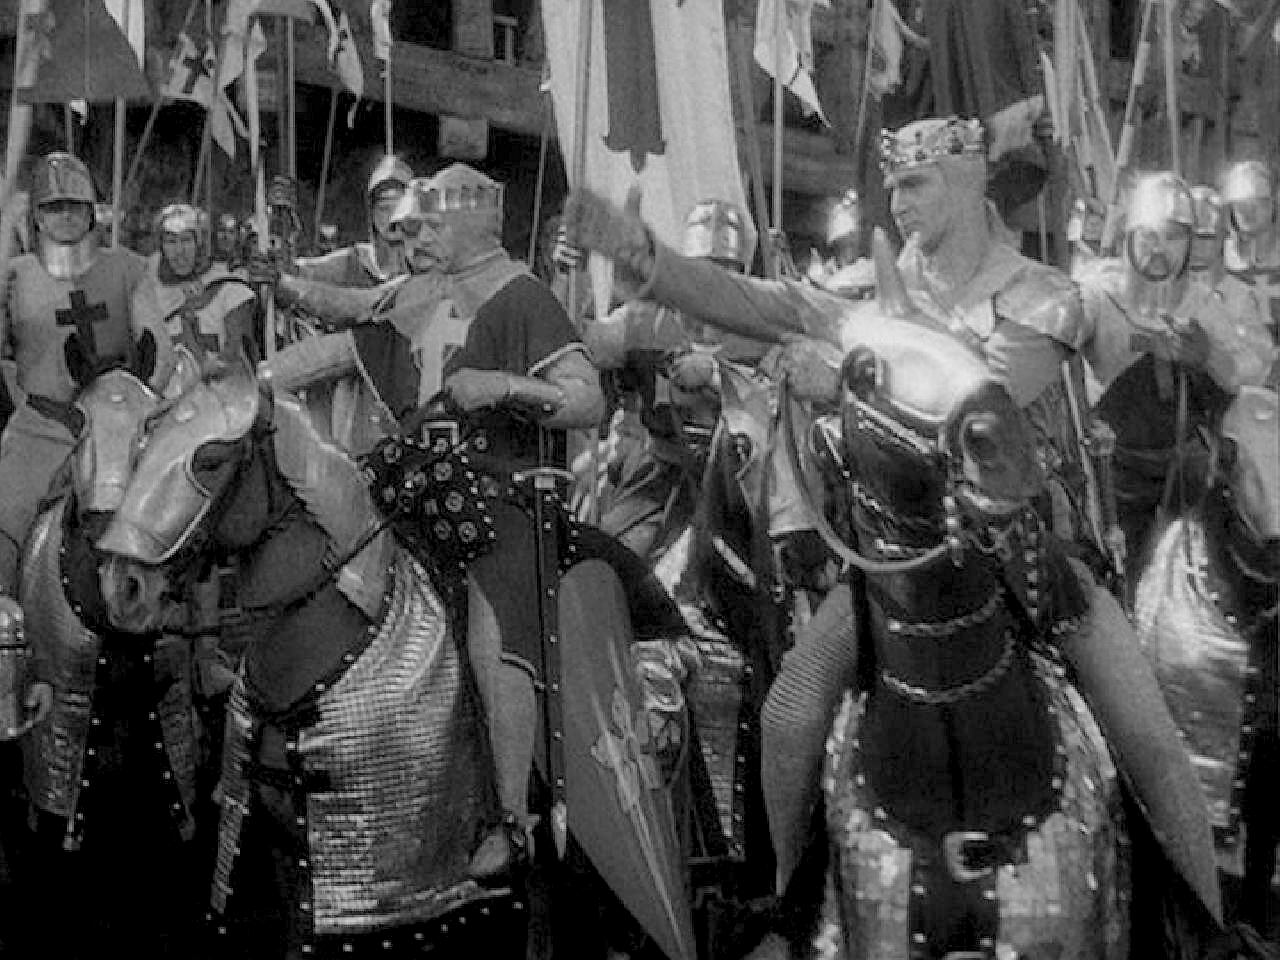 Imagen de 'Las cruzadas' de Cecil B. De Mille, a la derecha Ricardo, interpretado por Harry Wilcoxon.